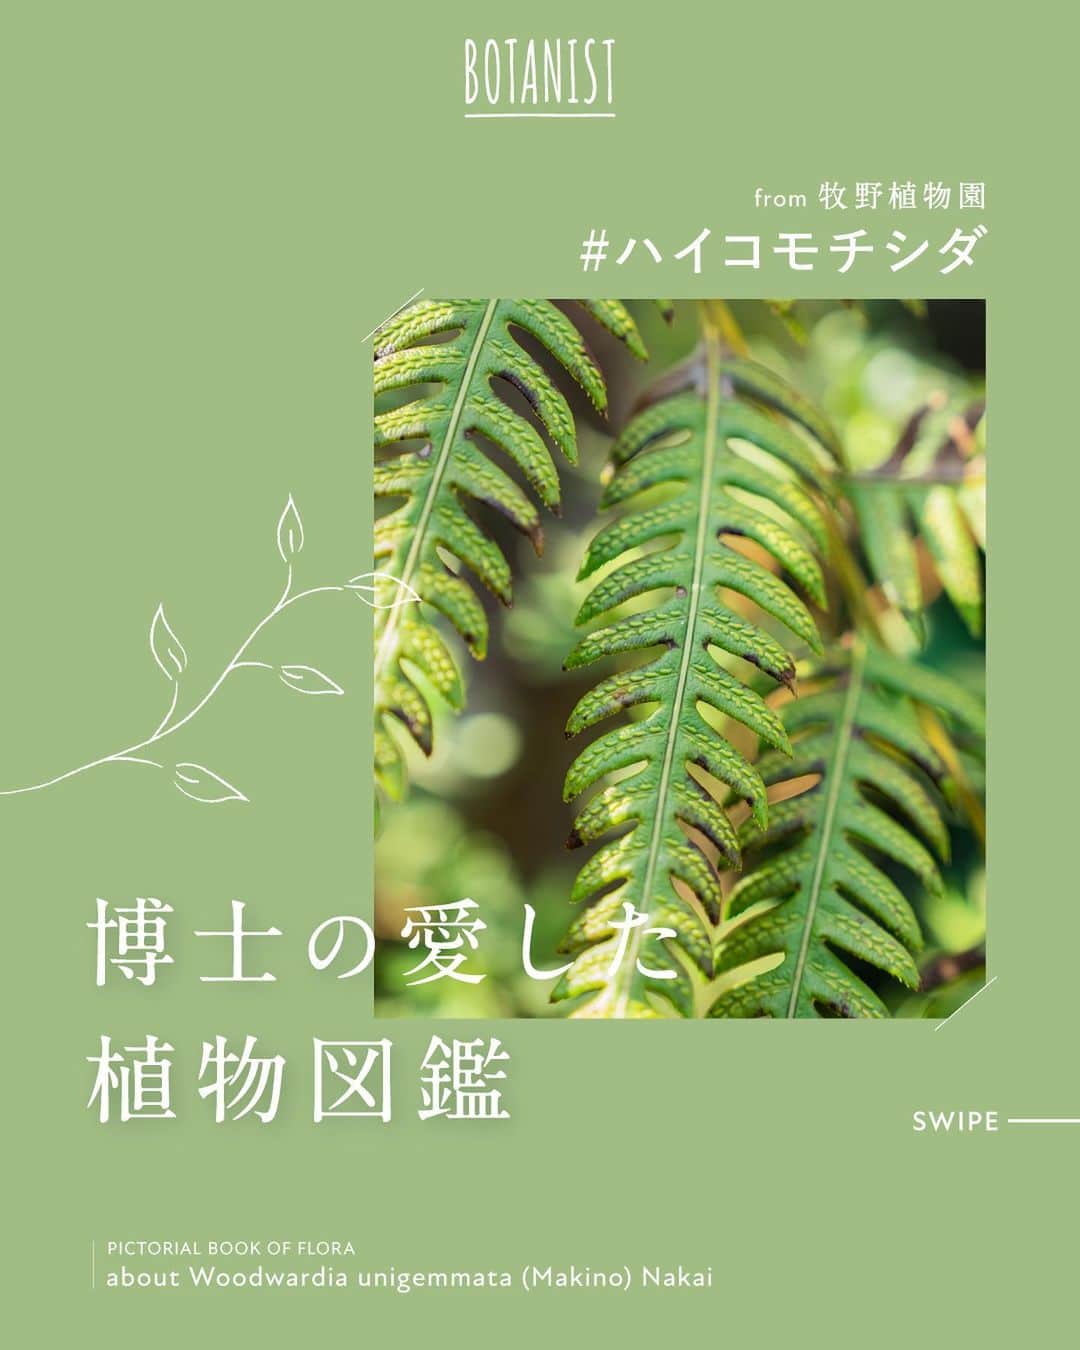 botanist officialのインスタグラム：「【博士の愛した植物図鑑 #ハイコモチシダ 】 日本を代表する植物博士である、牧野富太郎博士のエピソードと共に植物を紹介する #博士の愛した植物図鑑 🌿  今日は『ハイコモチシダ』をご紹介✍️ 葉の表面の模様が、かわいらしく特徴的な植物です。 詳しくは、画像をスワイプしてチェック💡  from 牧野植物園にて、植物図鑑を配信中。 #博士の愛した植物図鑑 ハッシュタグから他の投稿も是非チェックしてみてね♪  #BOTANISTfrom牧野植物園 #BOTANIST #ボタニスト #botanicalbeauty」